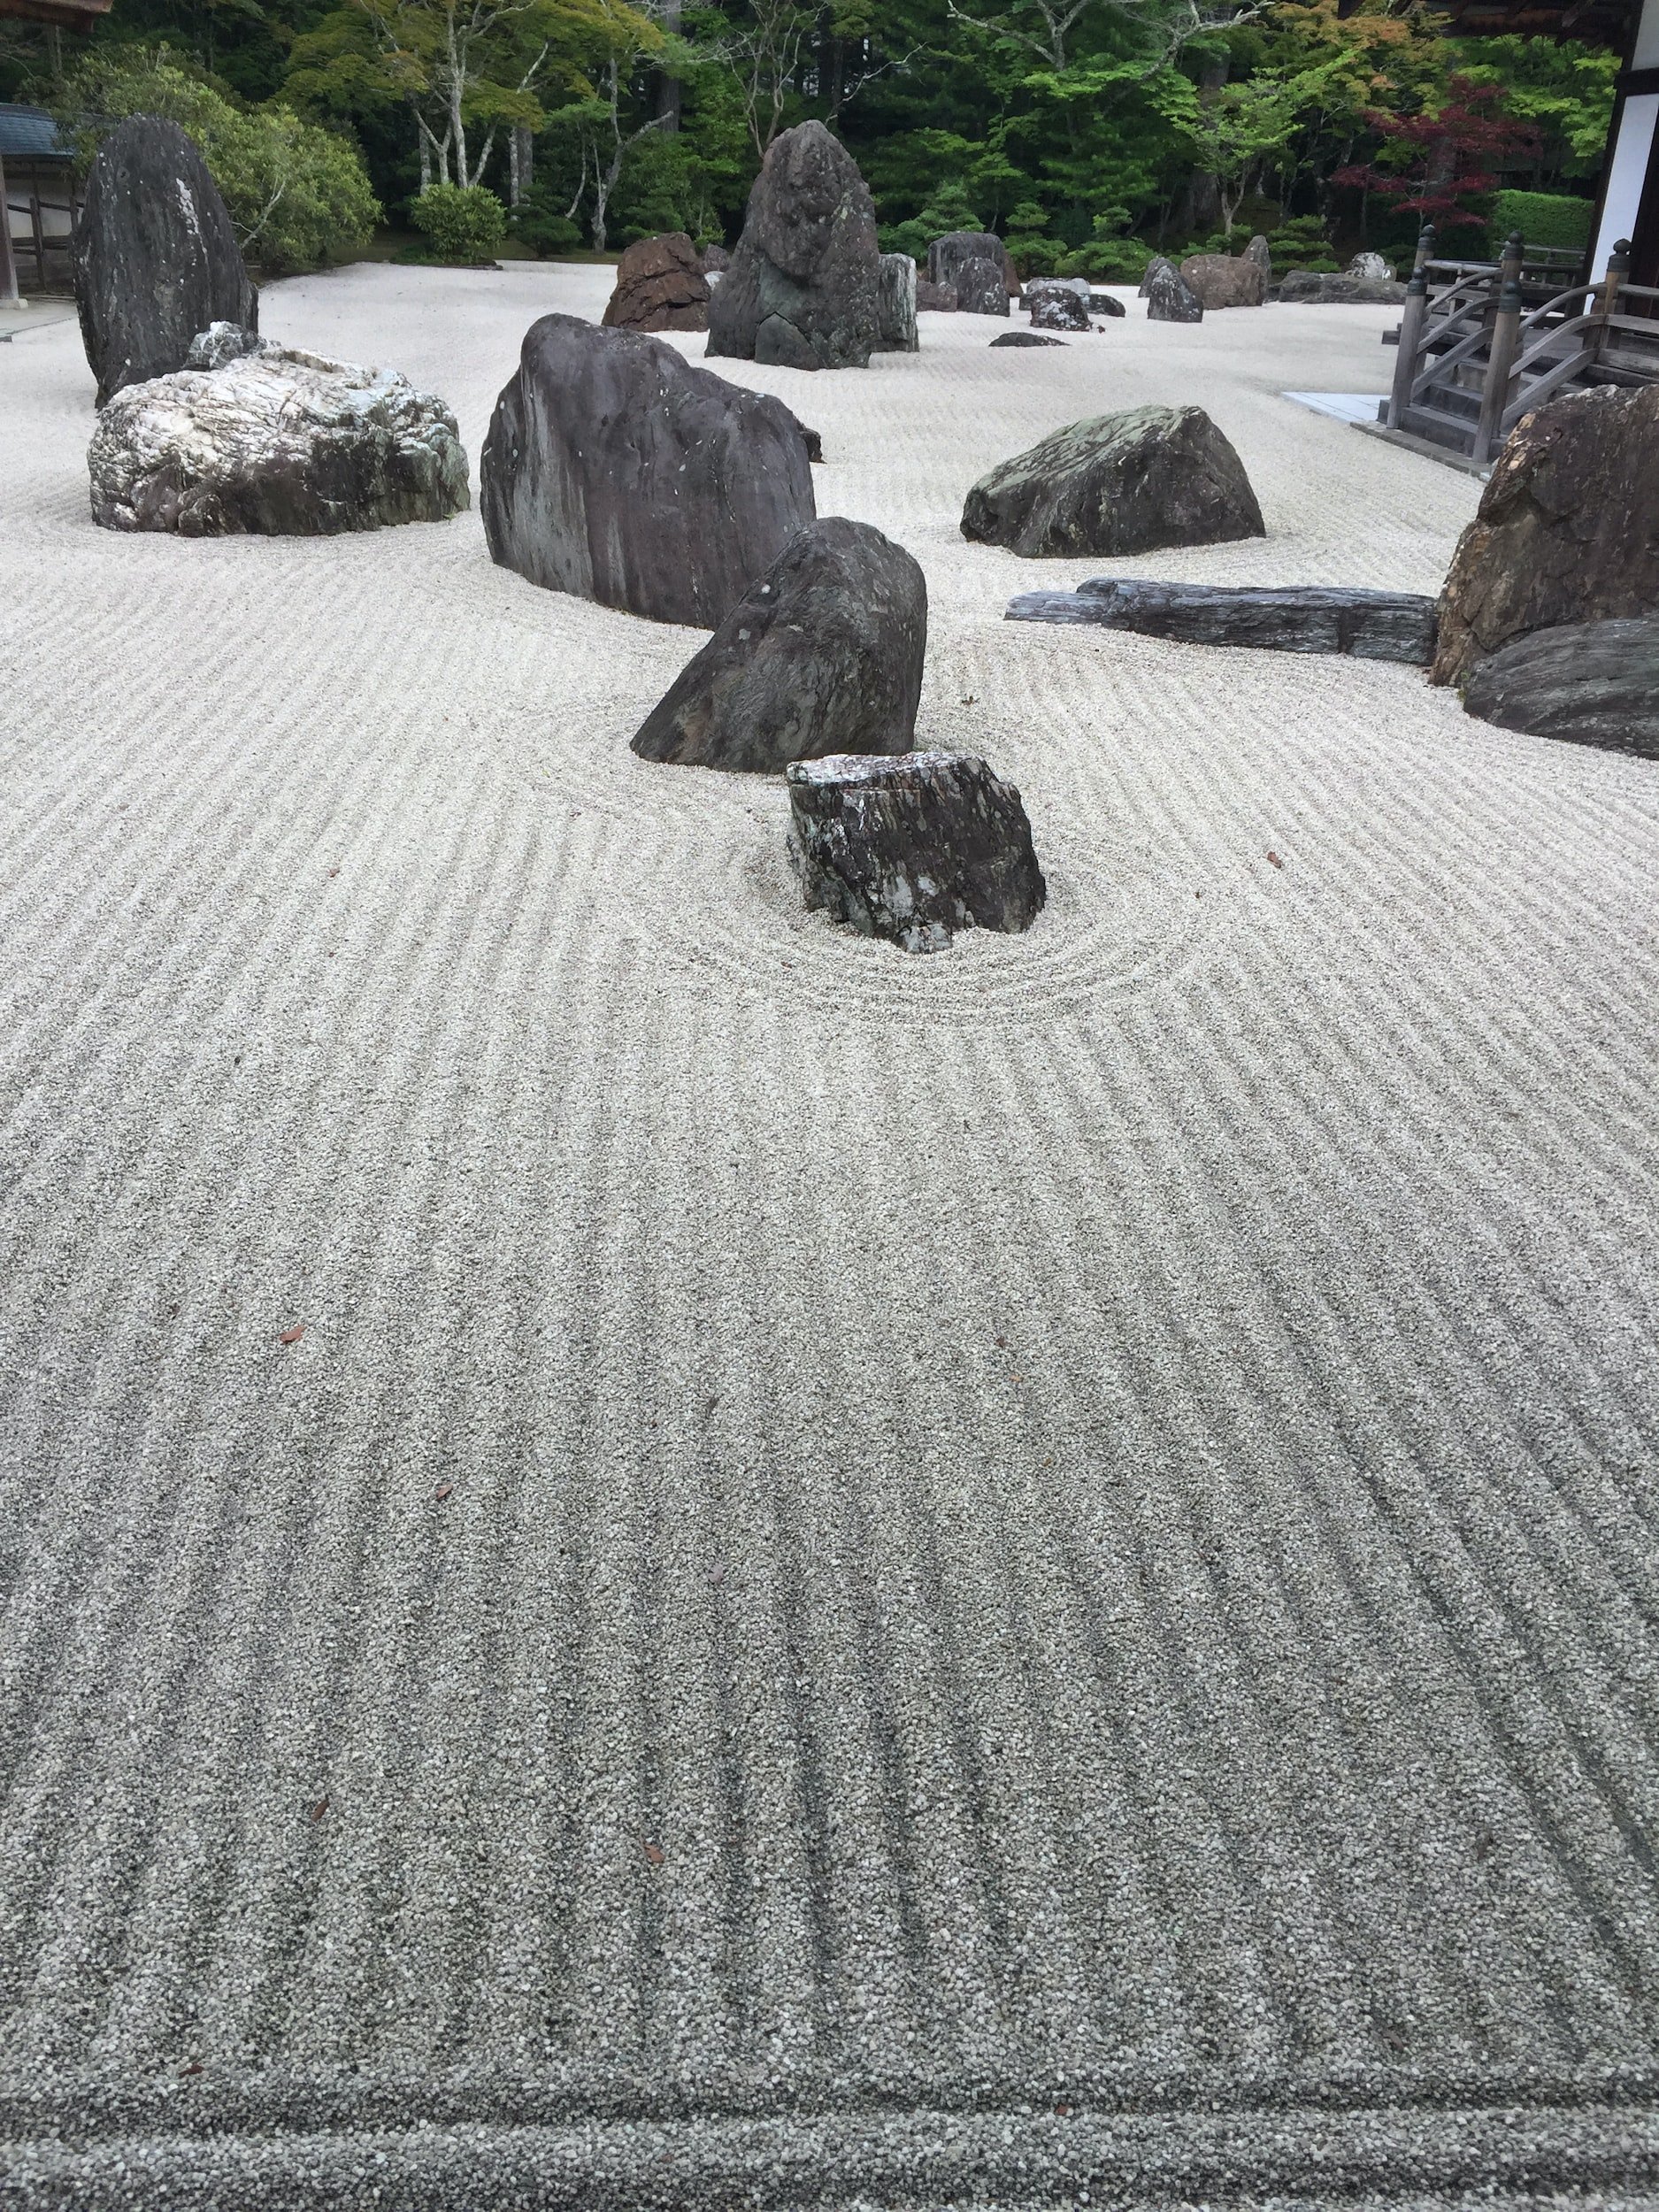 Desktop Tranquility Mini Japanese Zen Garden Kit for Home or Office Desk |  Office Decor Zen Garden Kit Improves Meditation | Includes Sand Tray